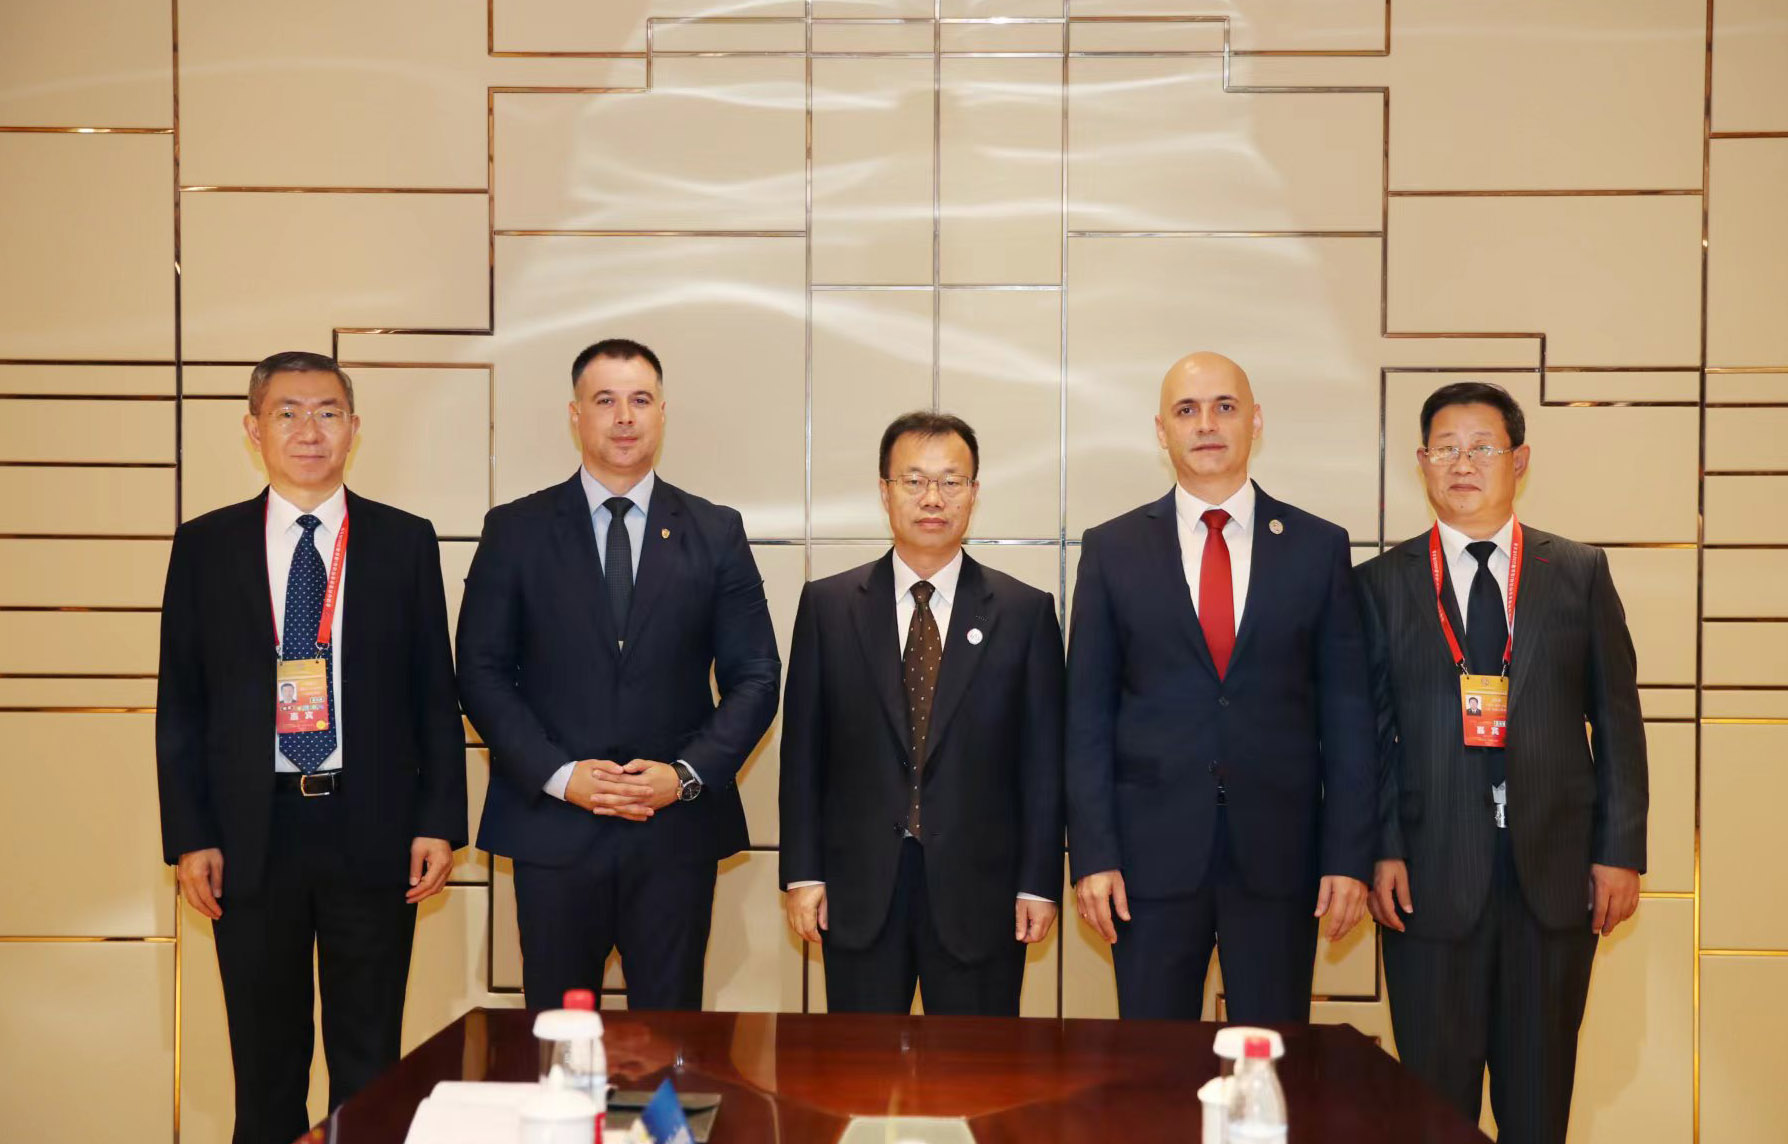 Državni sekretar dr Želјko Brkić razgovarao sa zamenikom ministra za javnu bezbednost Narodne Republike Kine Sun Maoli